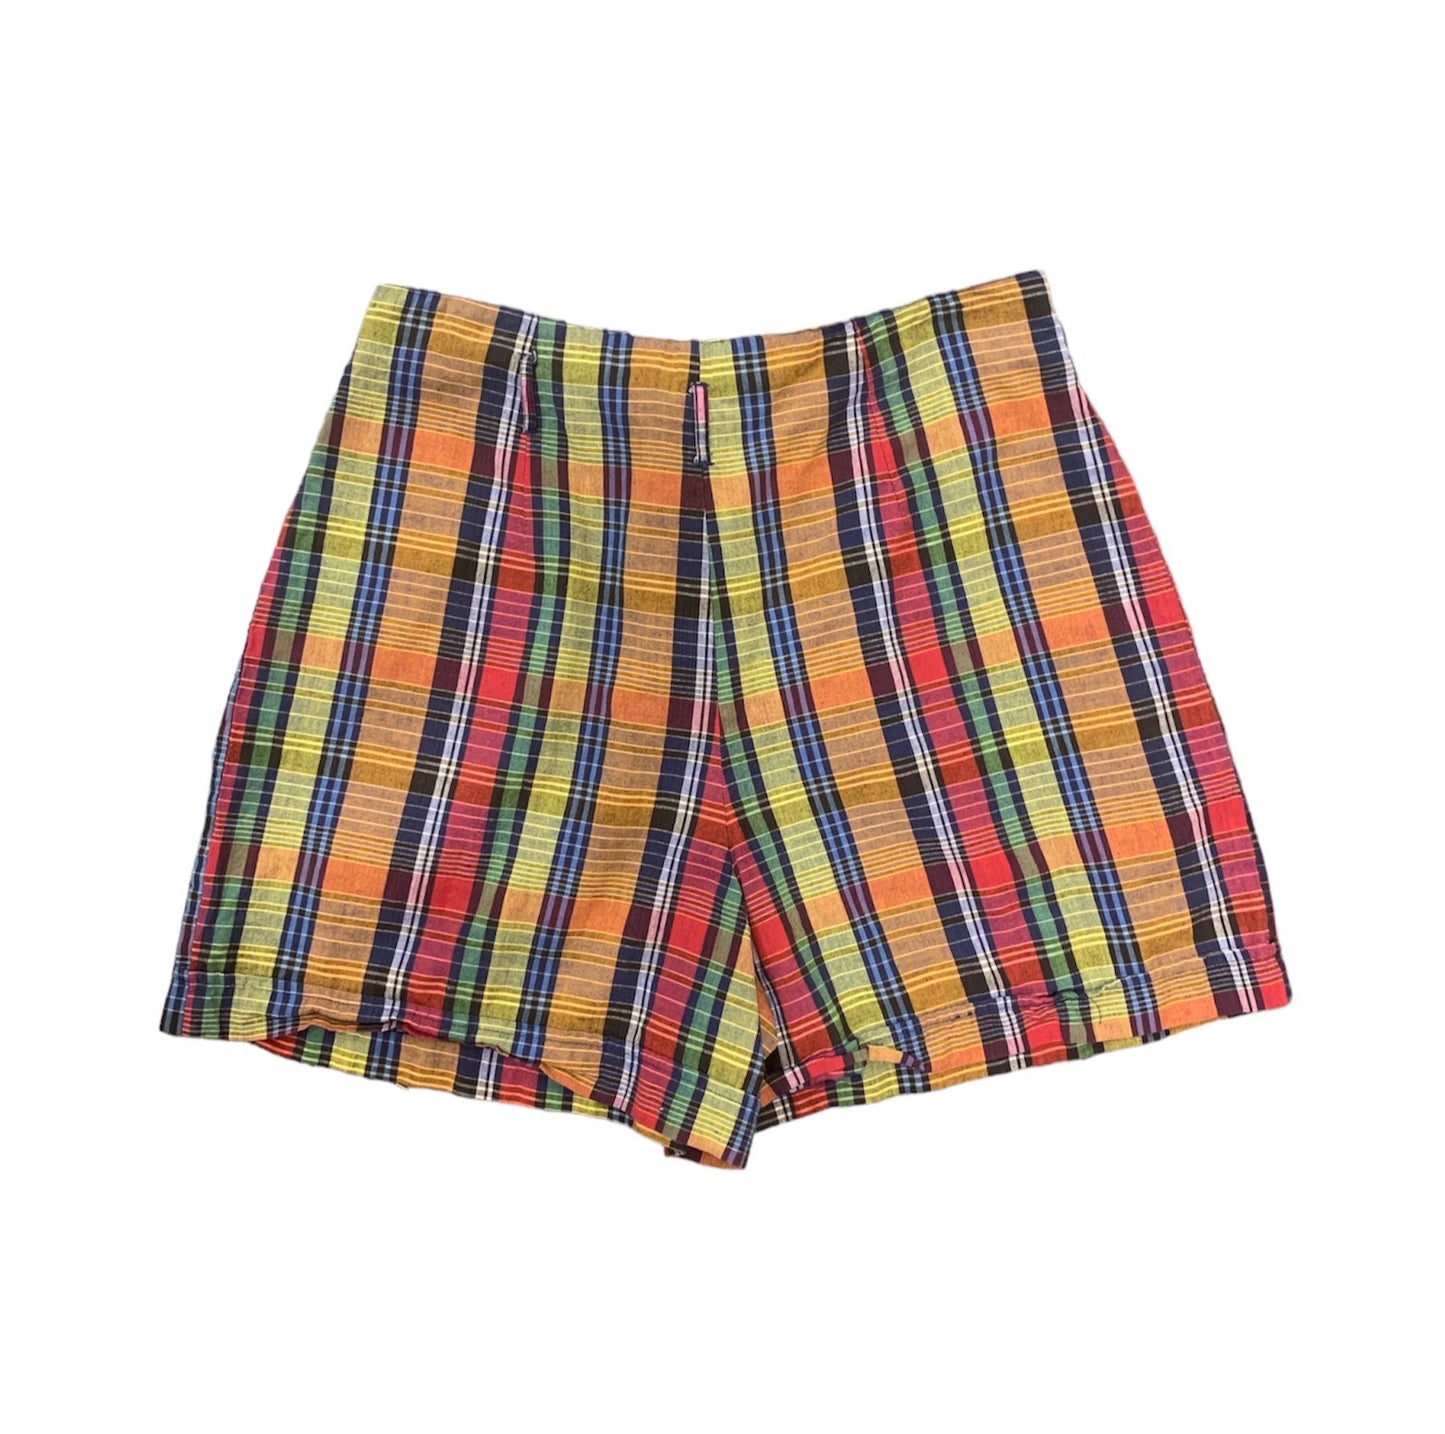 90’s plaid cotton shorts